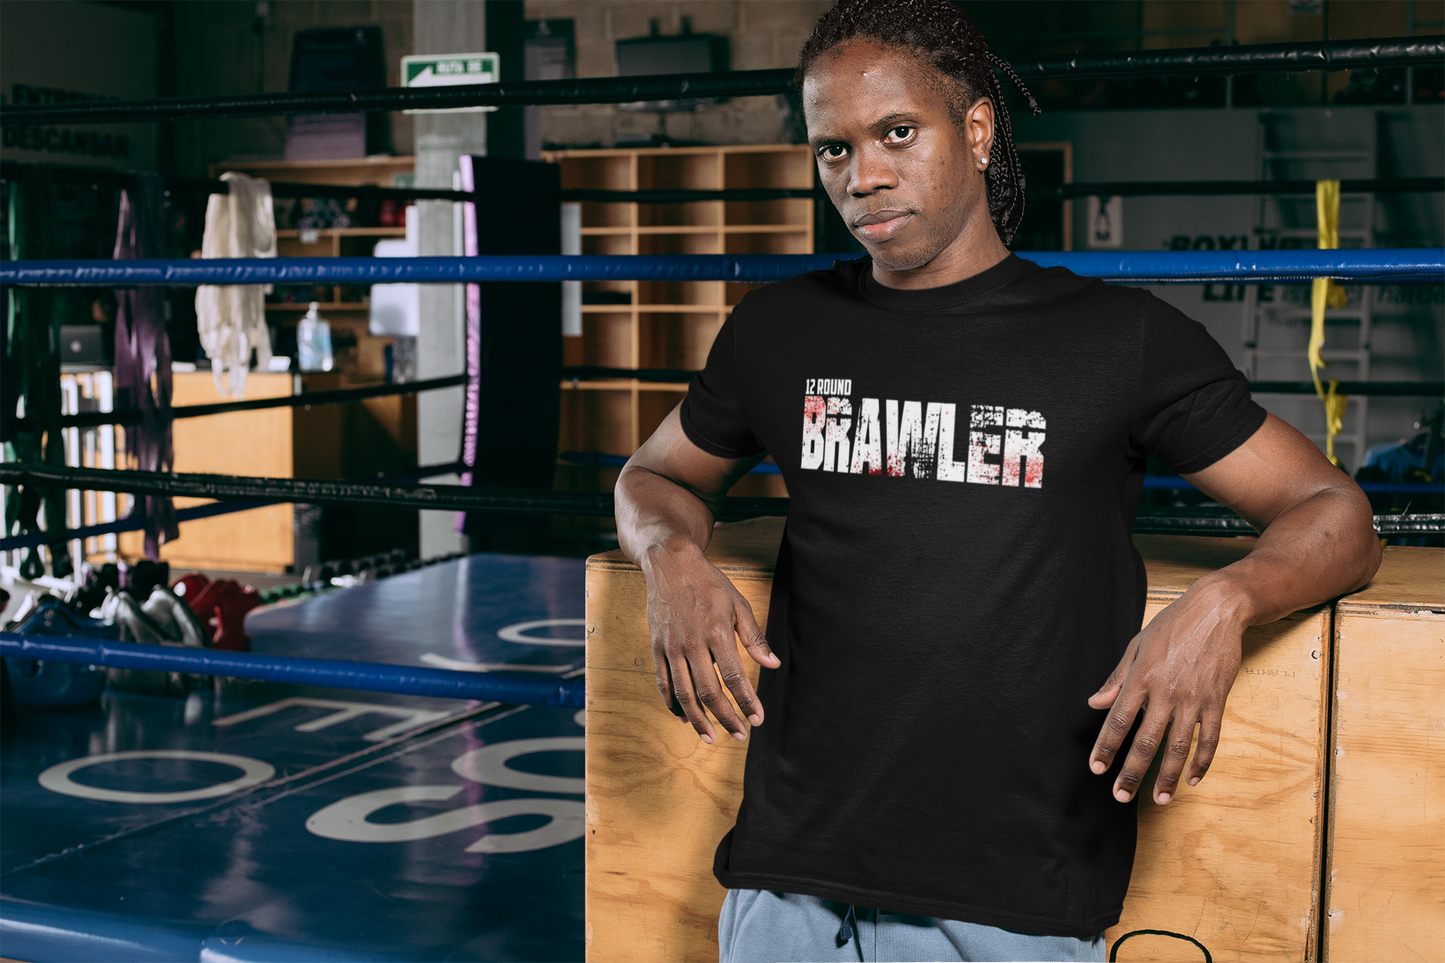 12 Round Brawler - Boxing / Workout T Shirt